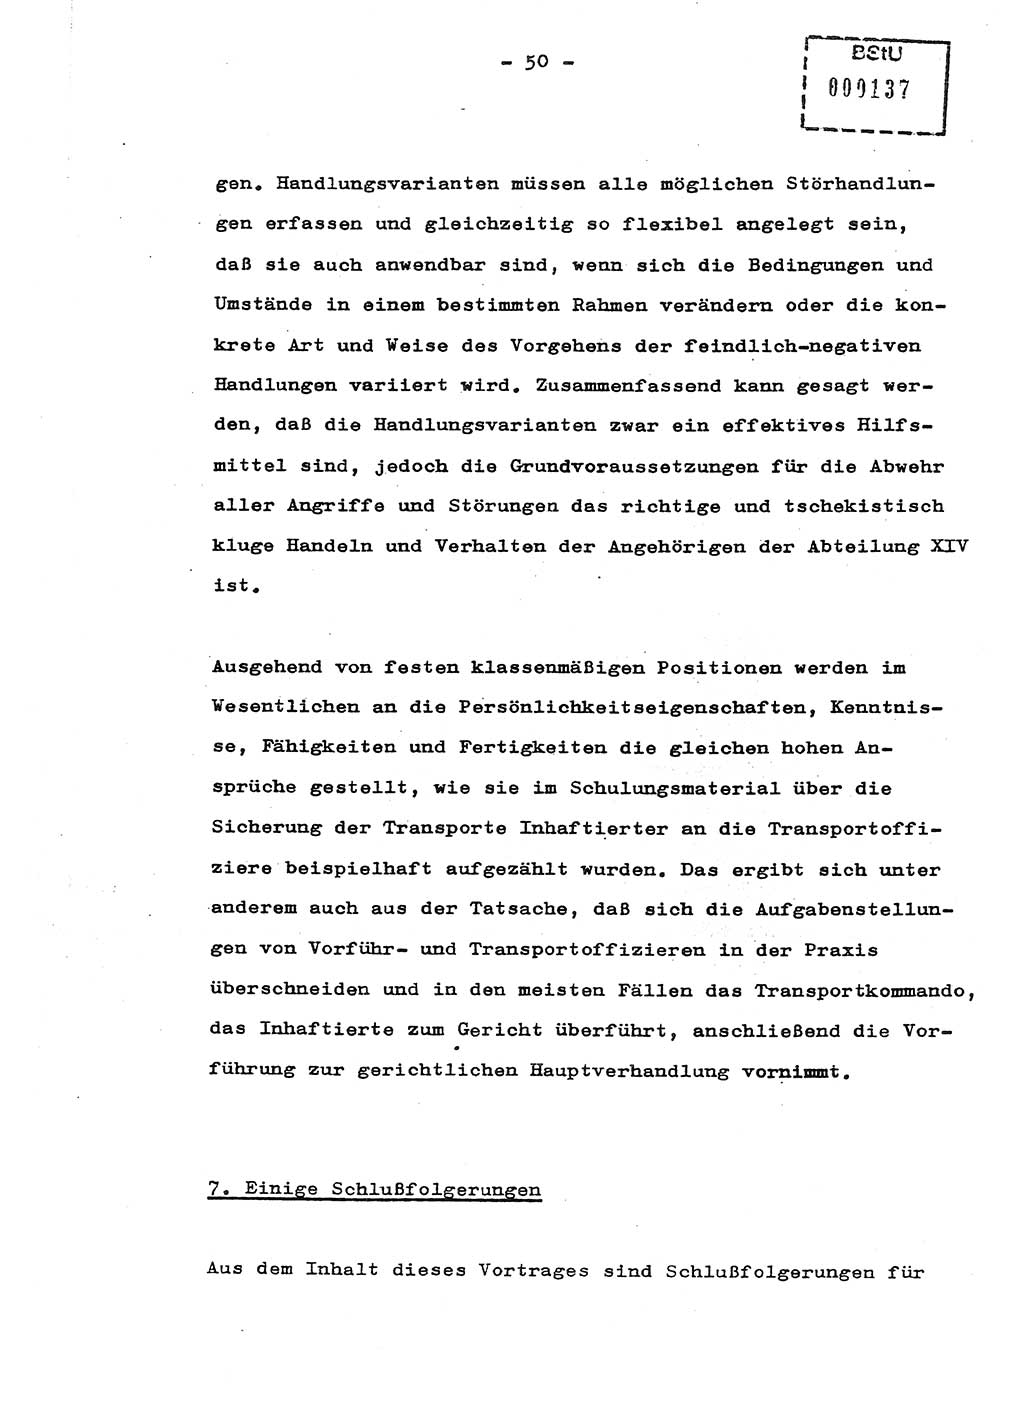 Schulungsmaterial Exemplar-Nr.: 8, Ministerium für Staatssicherheit [Deutsche Demokratische Republik (DDR)], Abteilung (Abt.) ⅩⅣ, Berlin 1987, Seite 50 (Sch.-Mat. Expl. 8 MfS DDR Abt. ⅩⅣ /87 1987, S. 50)